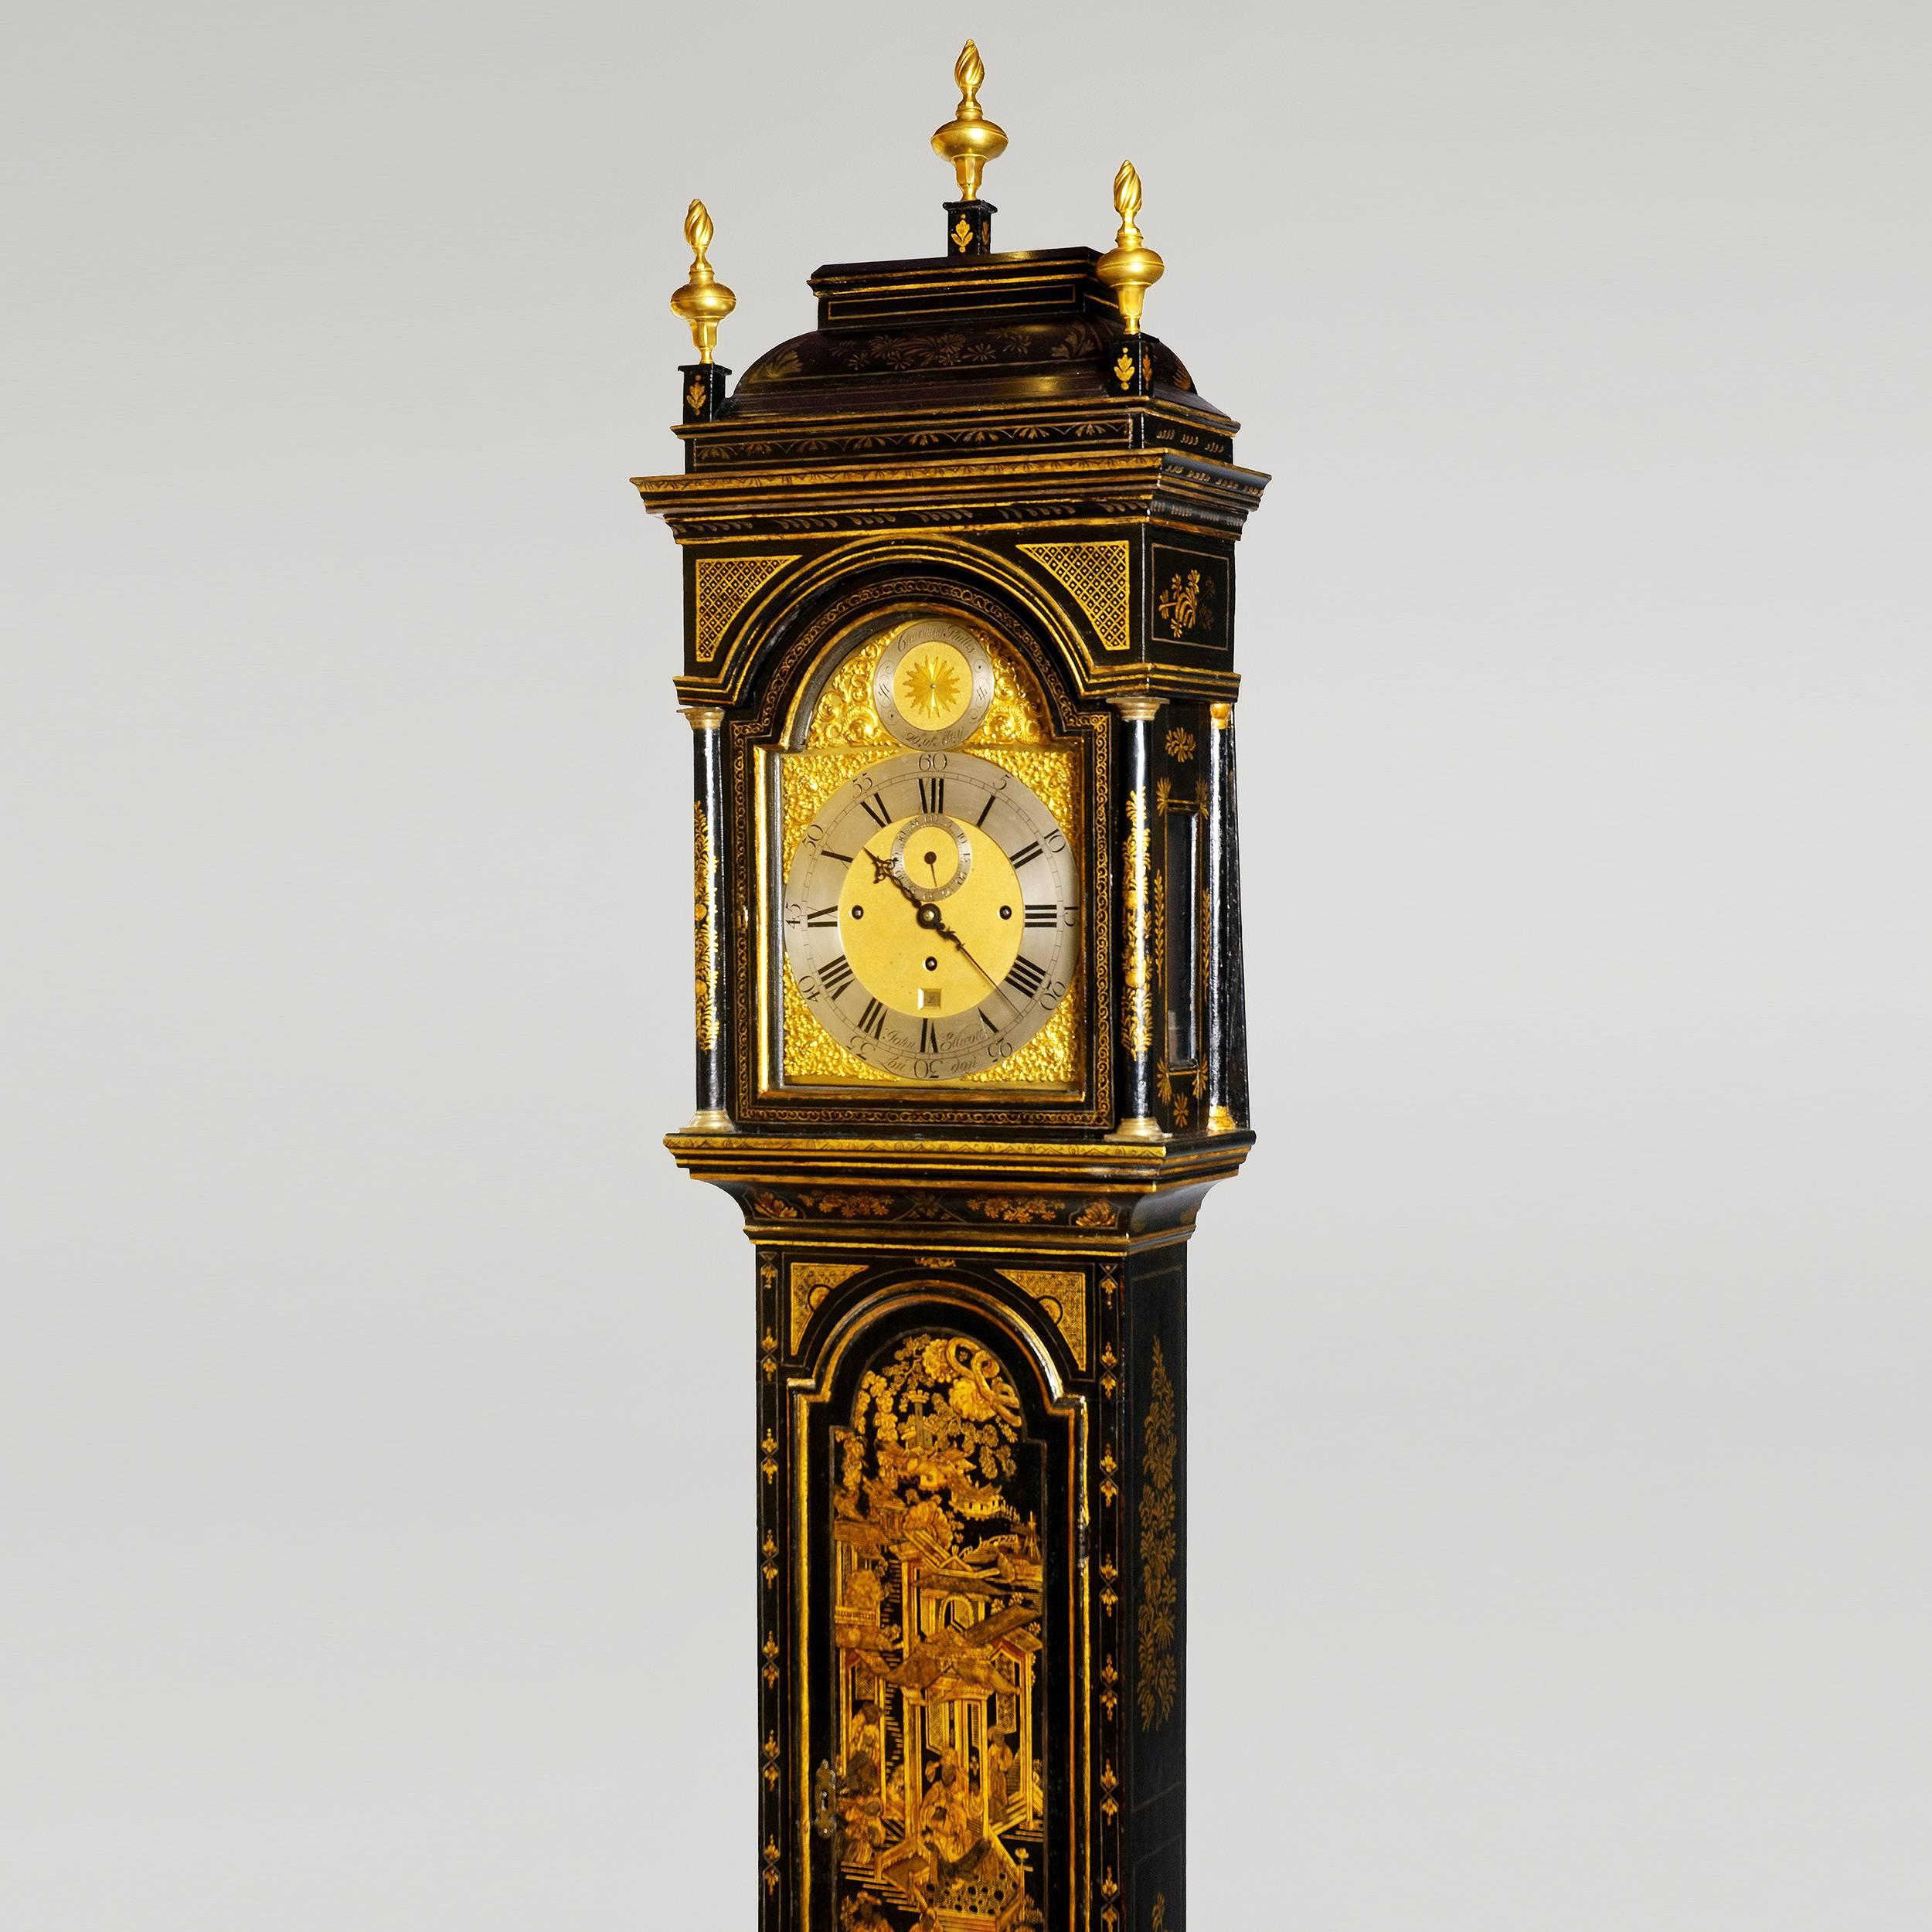 18th century lacquer clocks